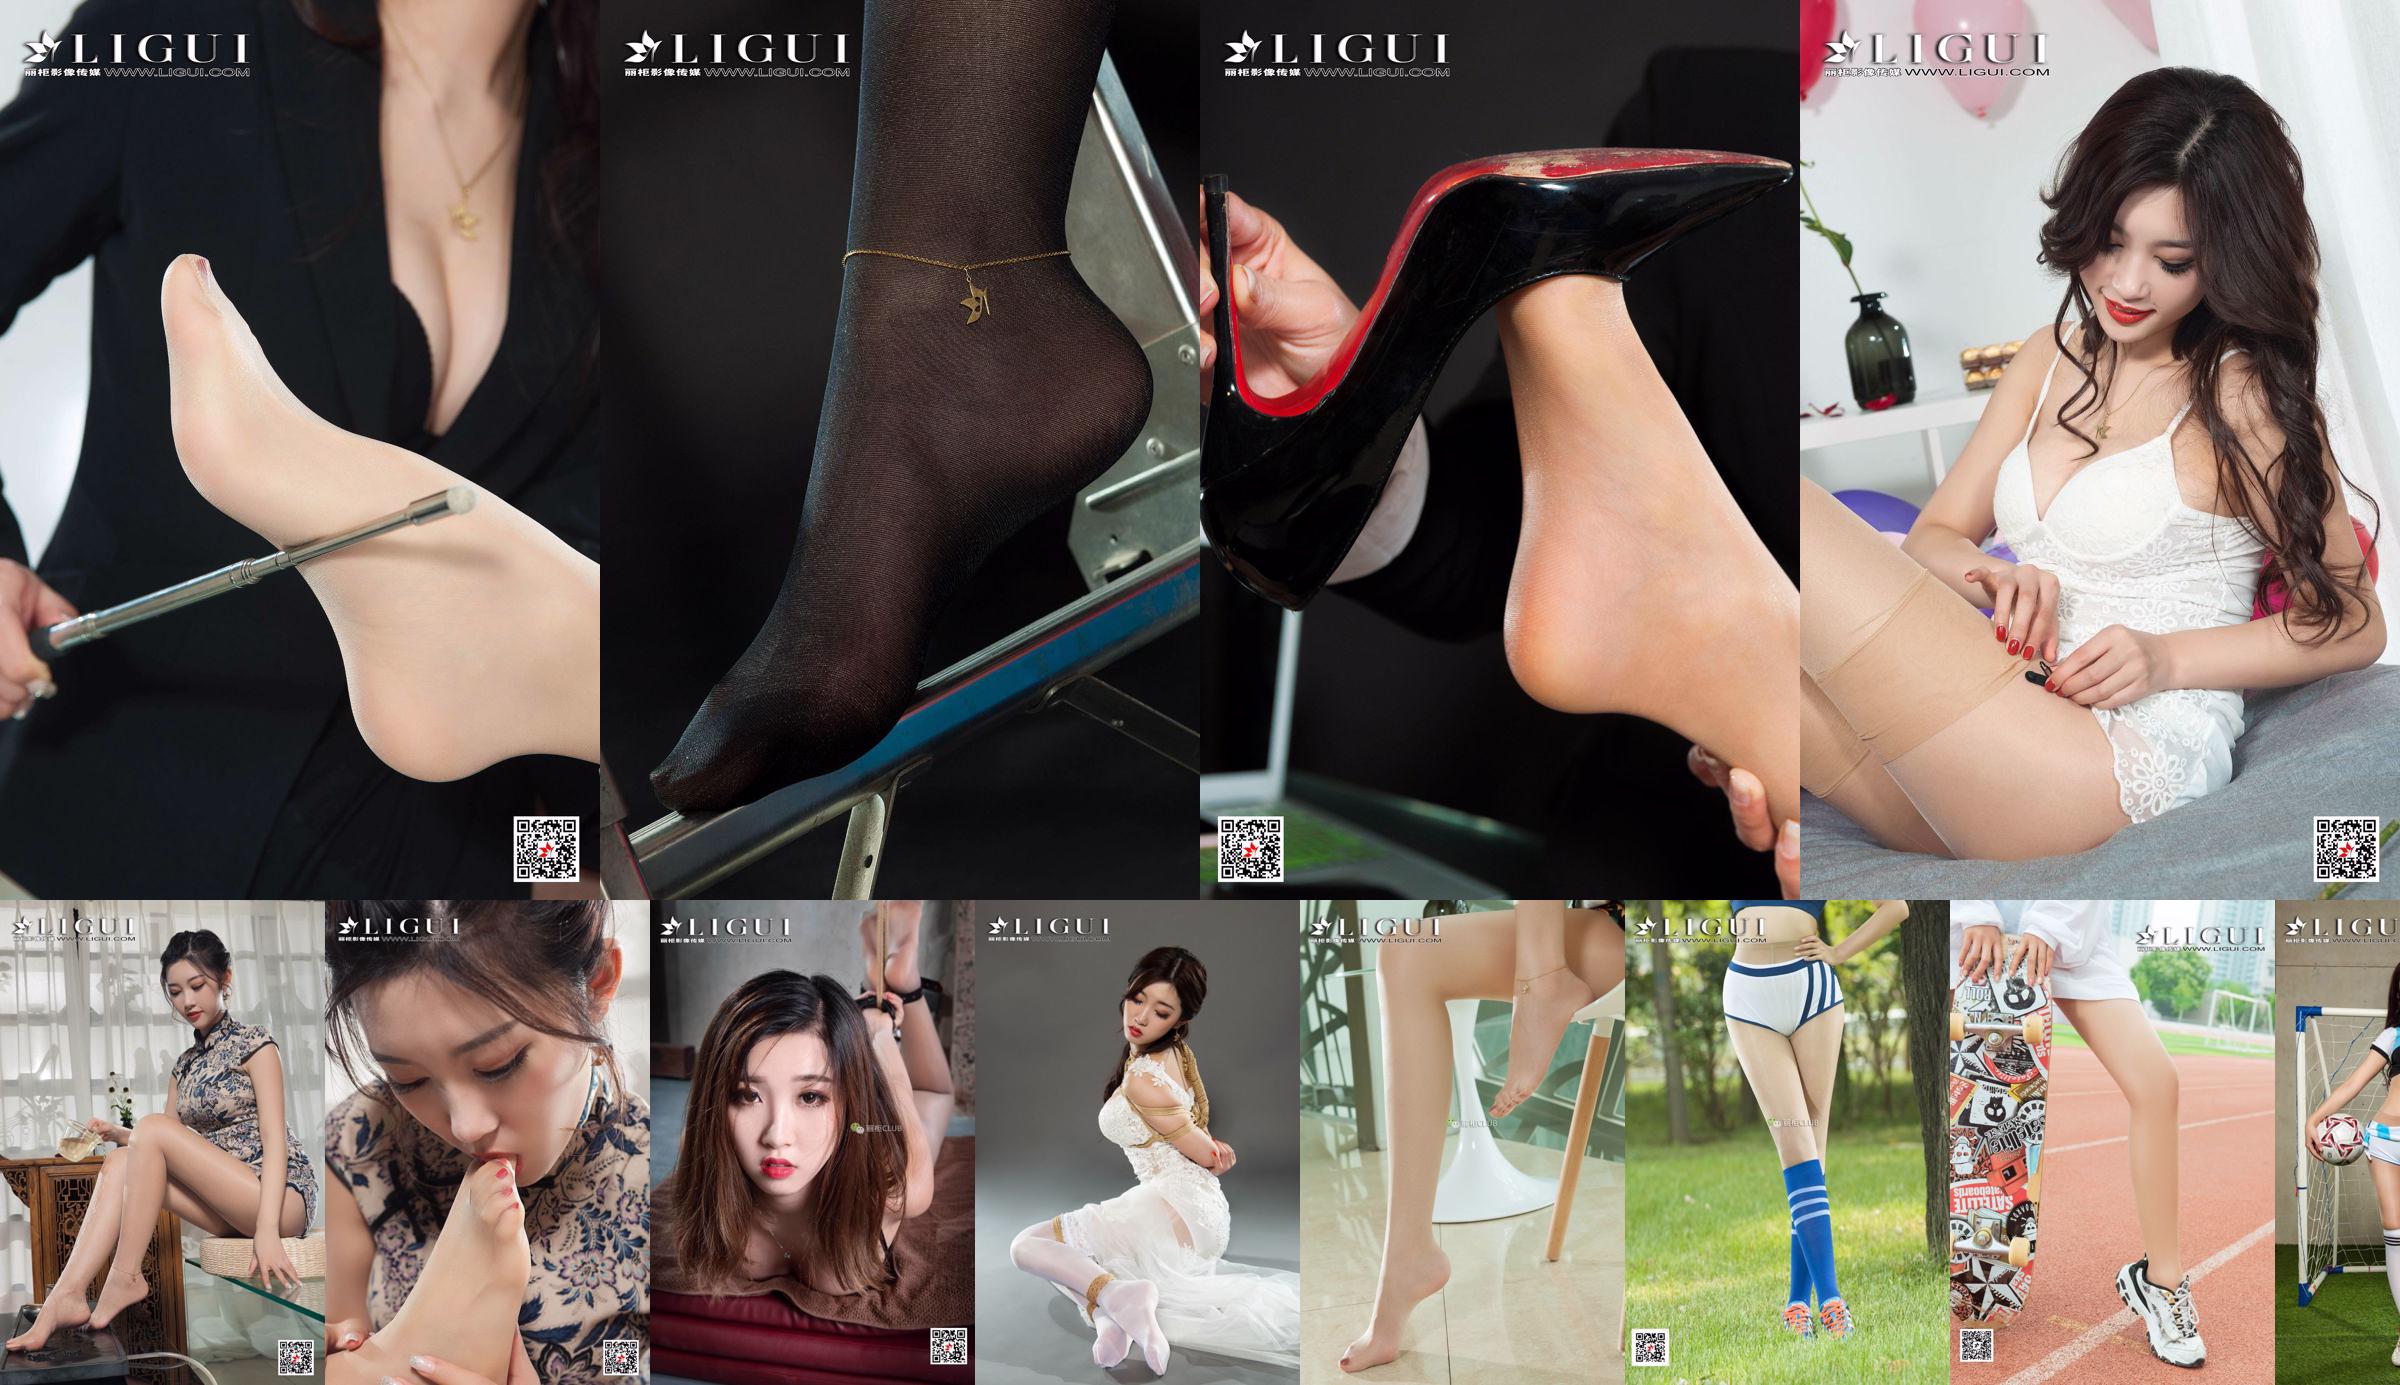 Model kaki mode Xiao Xiao "Black Silk OL" [Ligui Ligui] No.e8aada Halaman 1